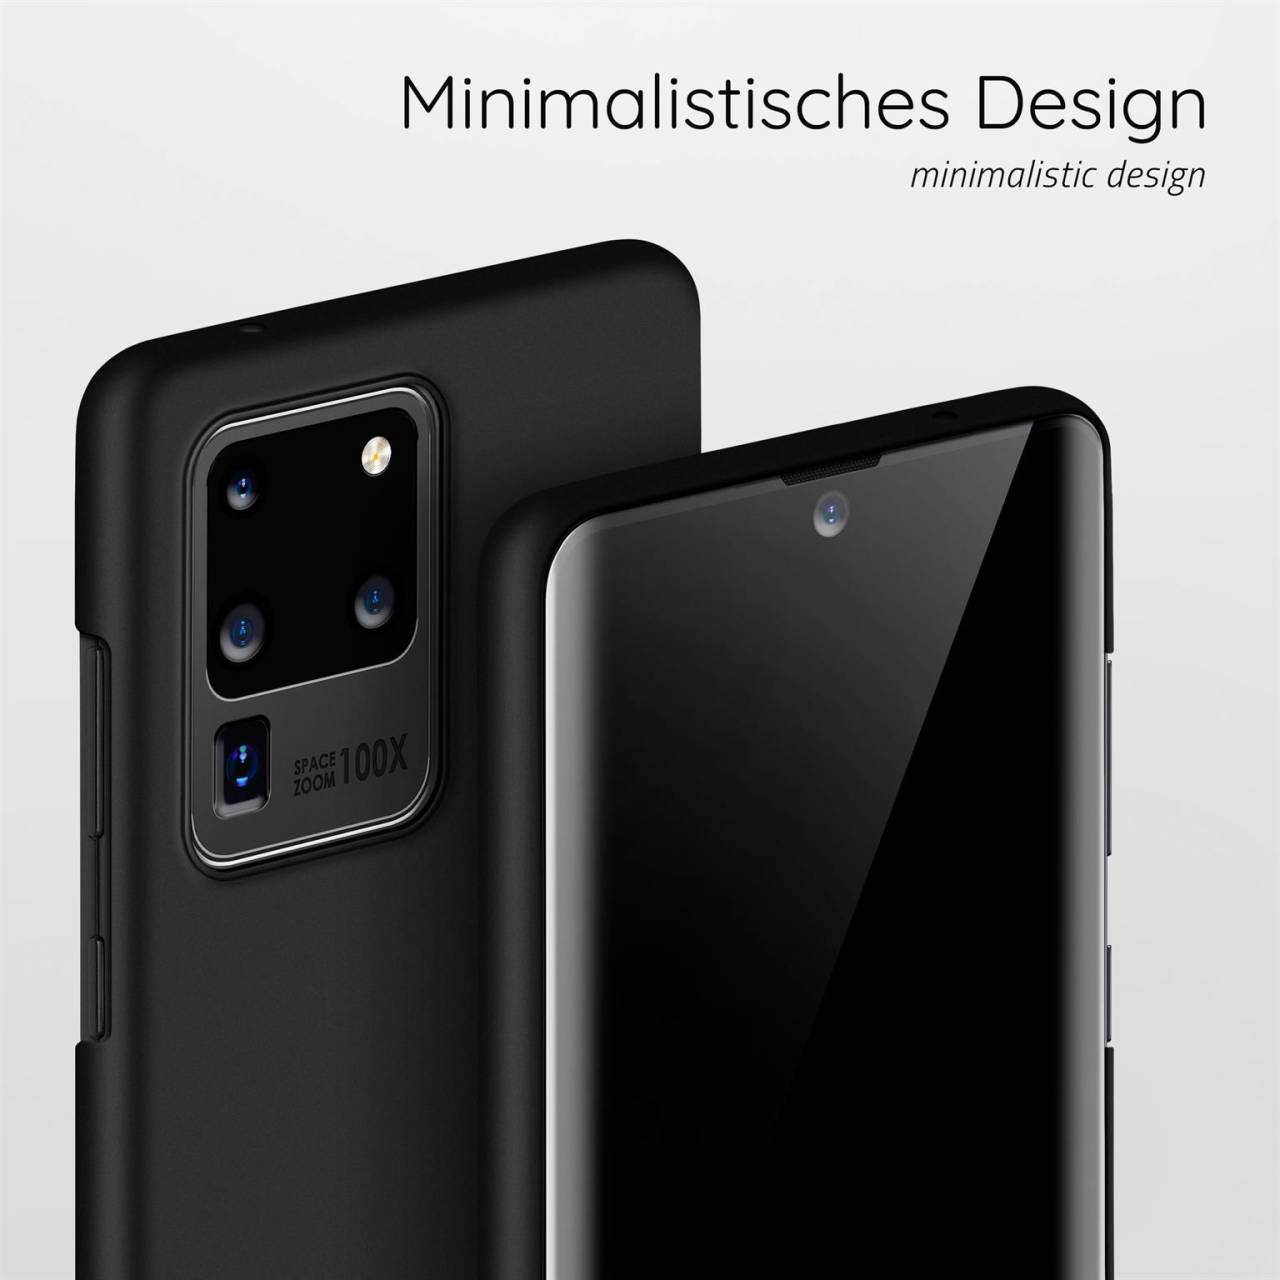 moex Alpha Case für Samsung Galaxy S20 Ultra – Extrem dünne, minimalistische Hülle in seidenmatt